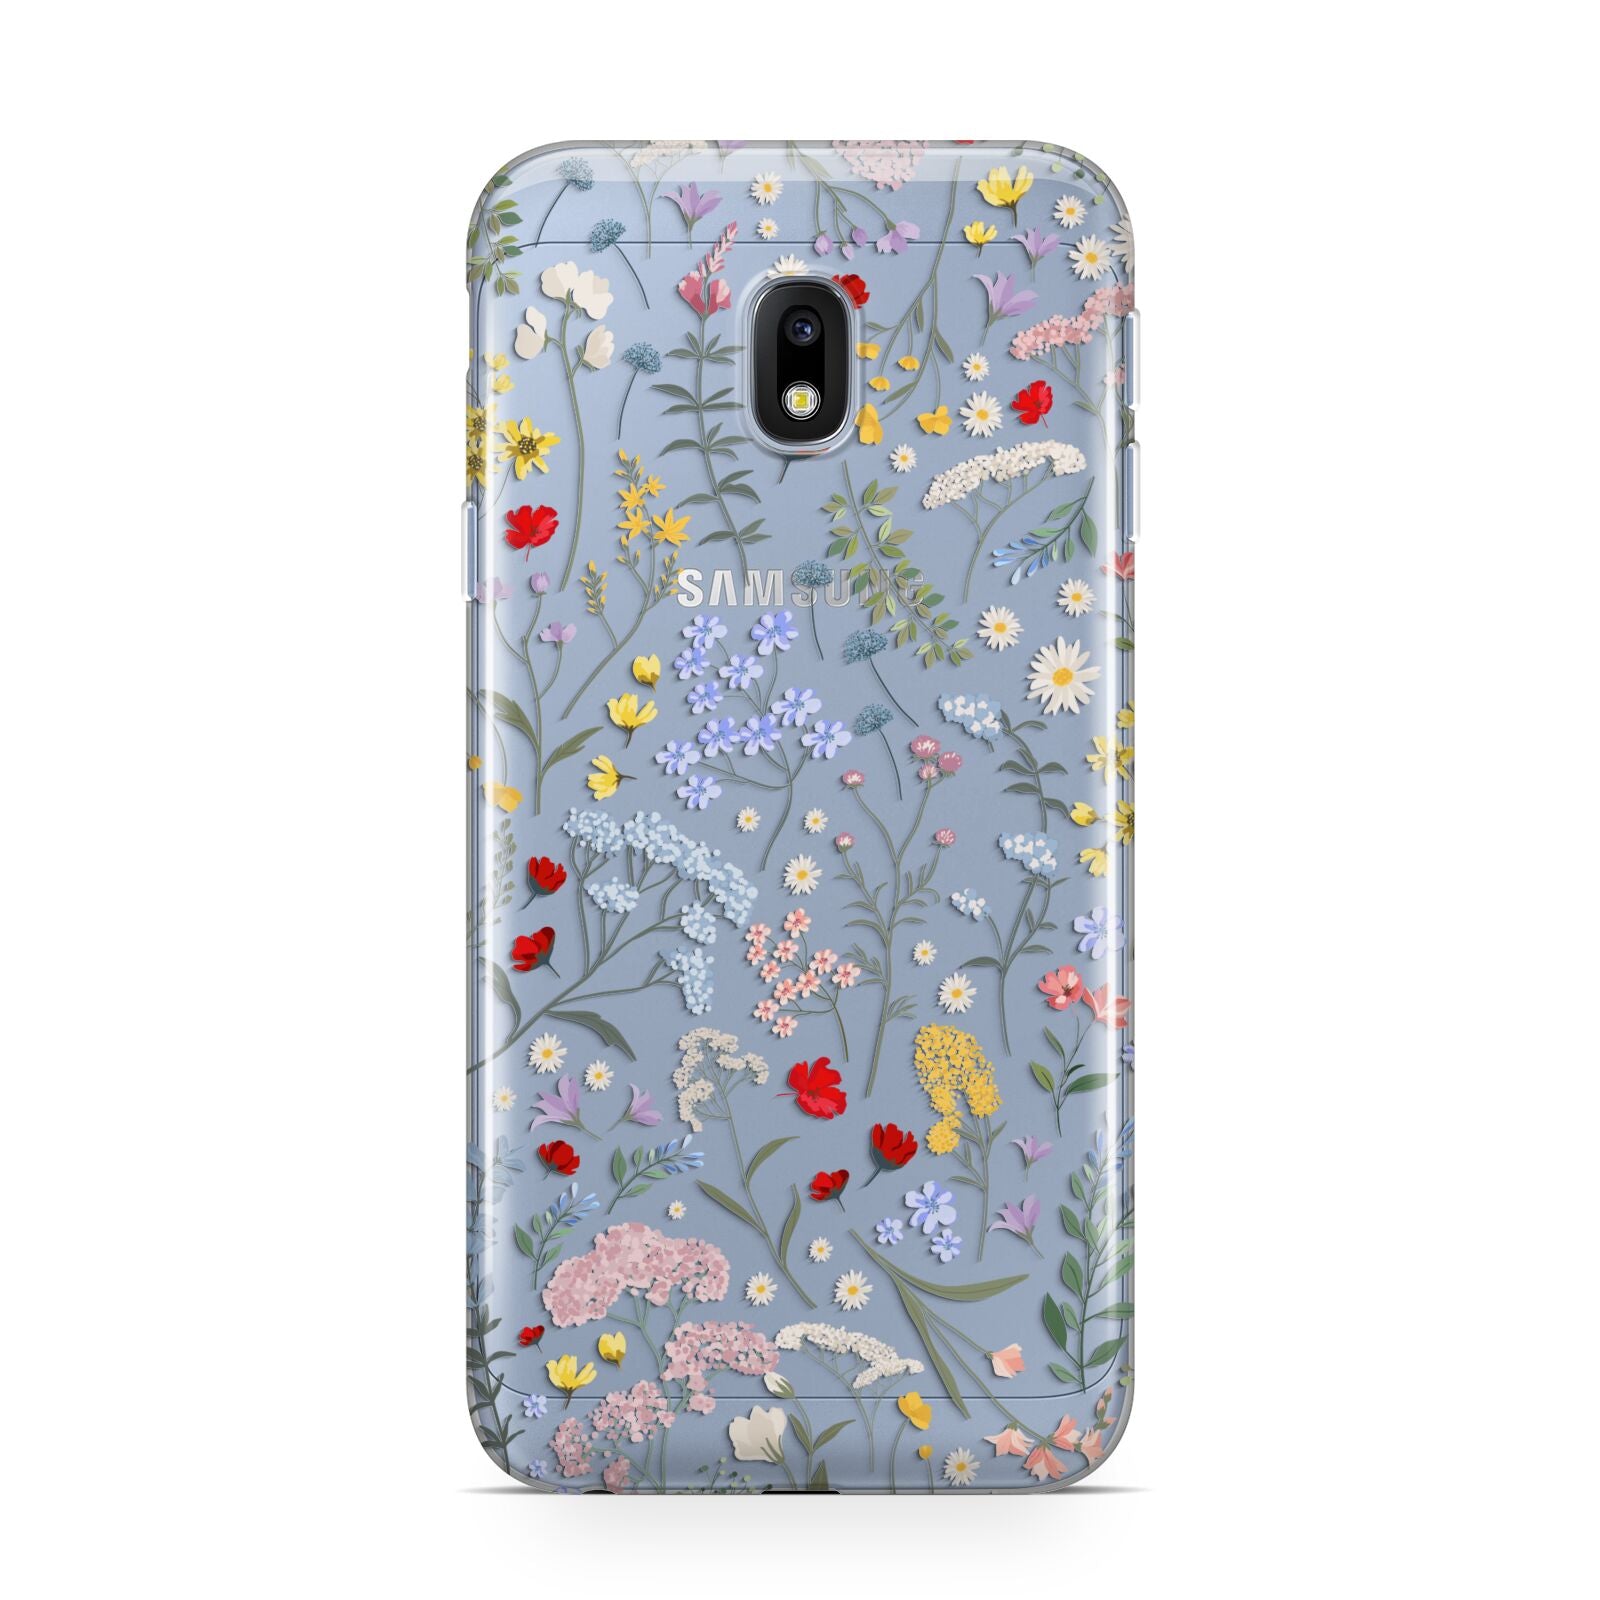 Wild Flowers Samsung Galaxy J3 2017 Case